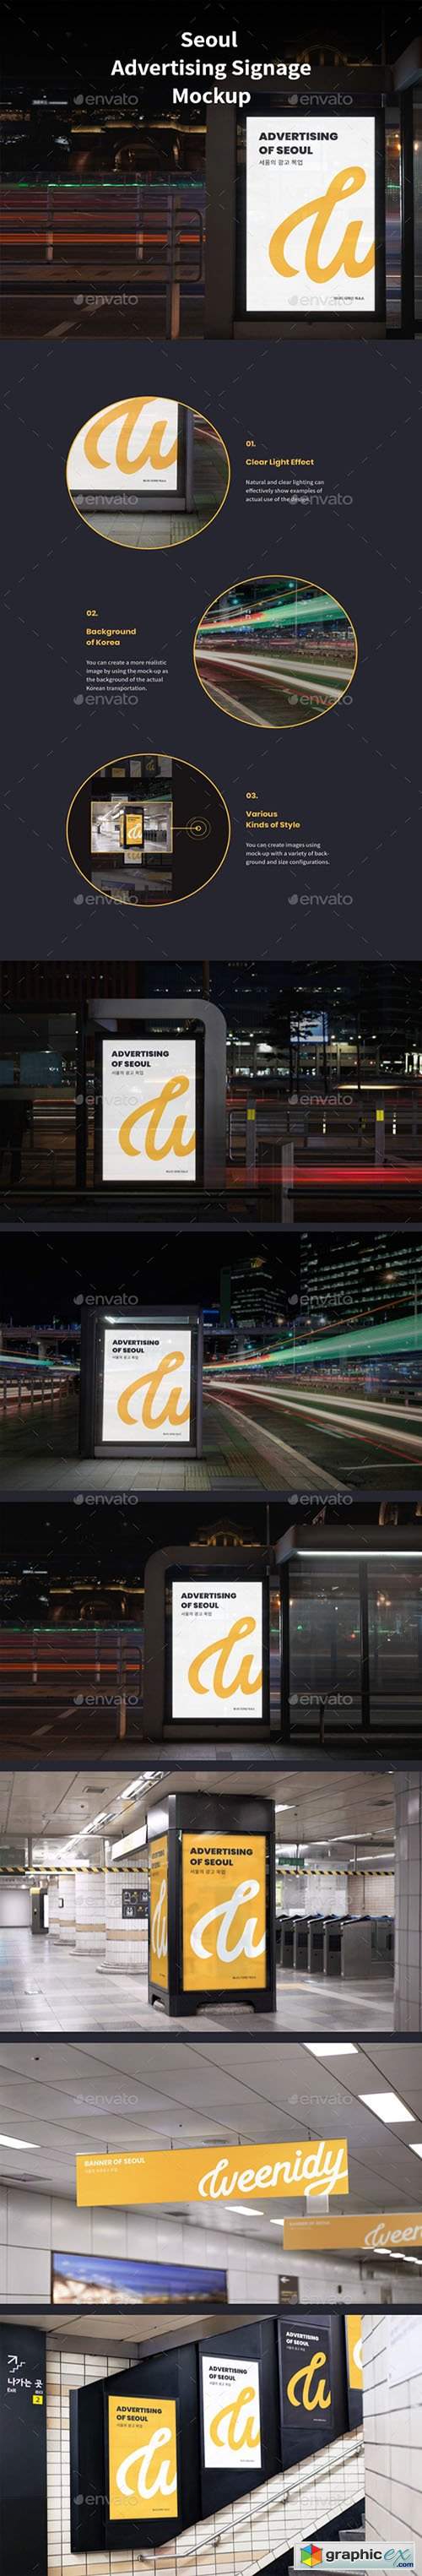 Seoul Advertising signage mockup 